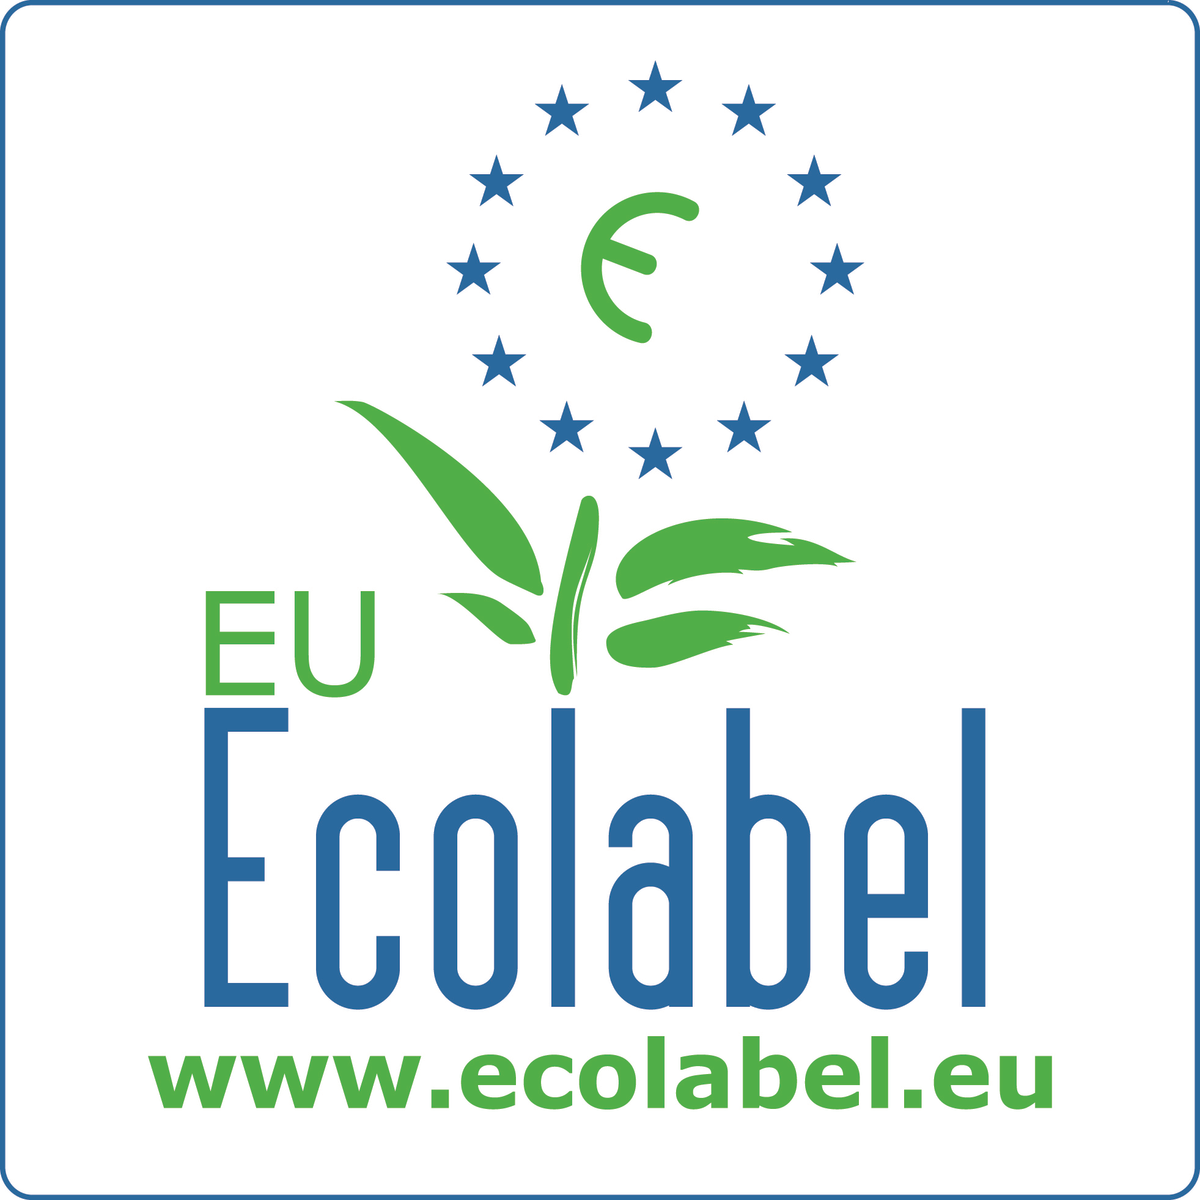 EU Ecolabel (DK/030/001)